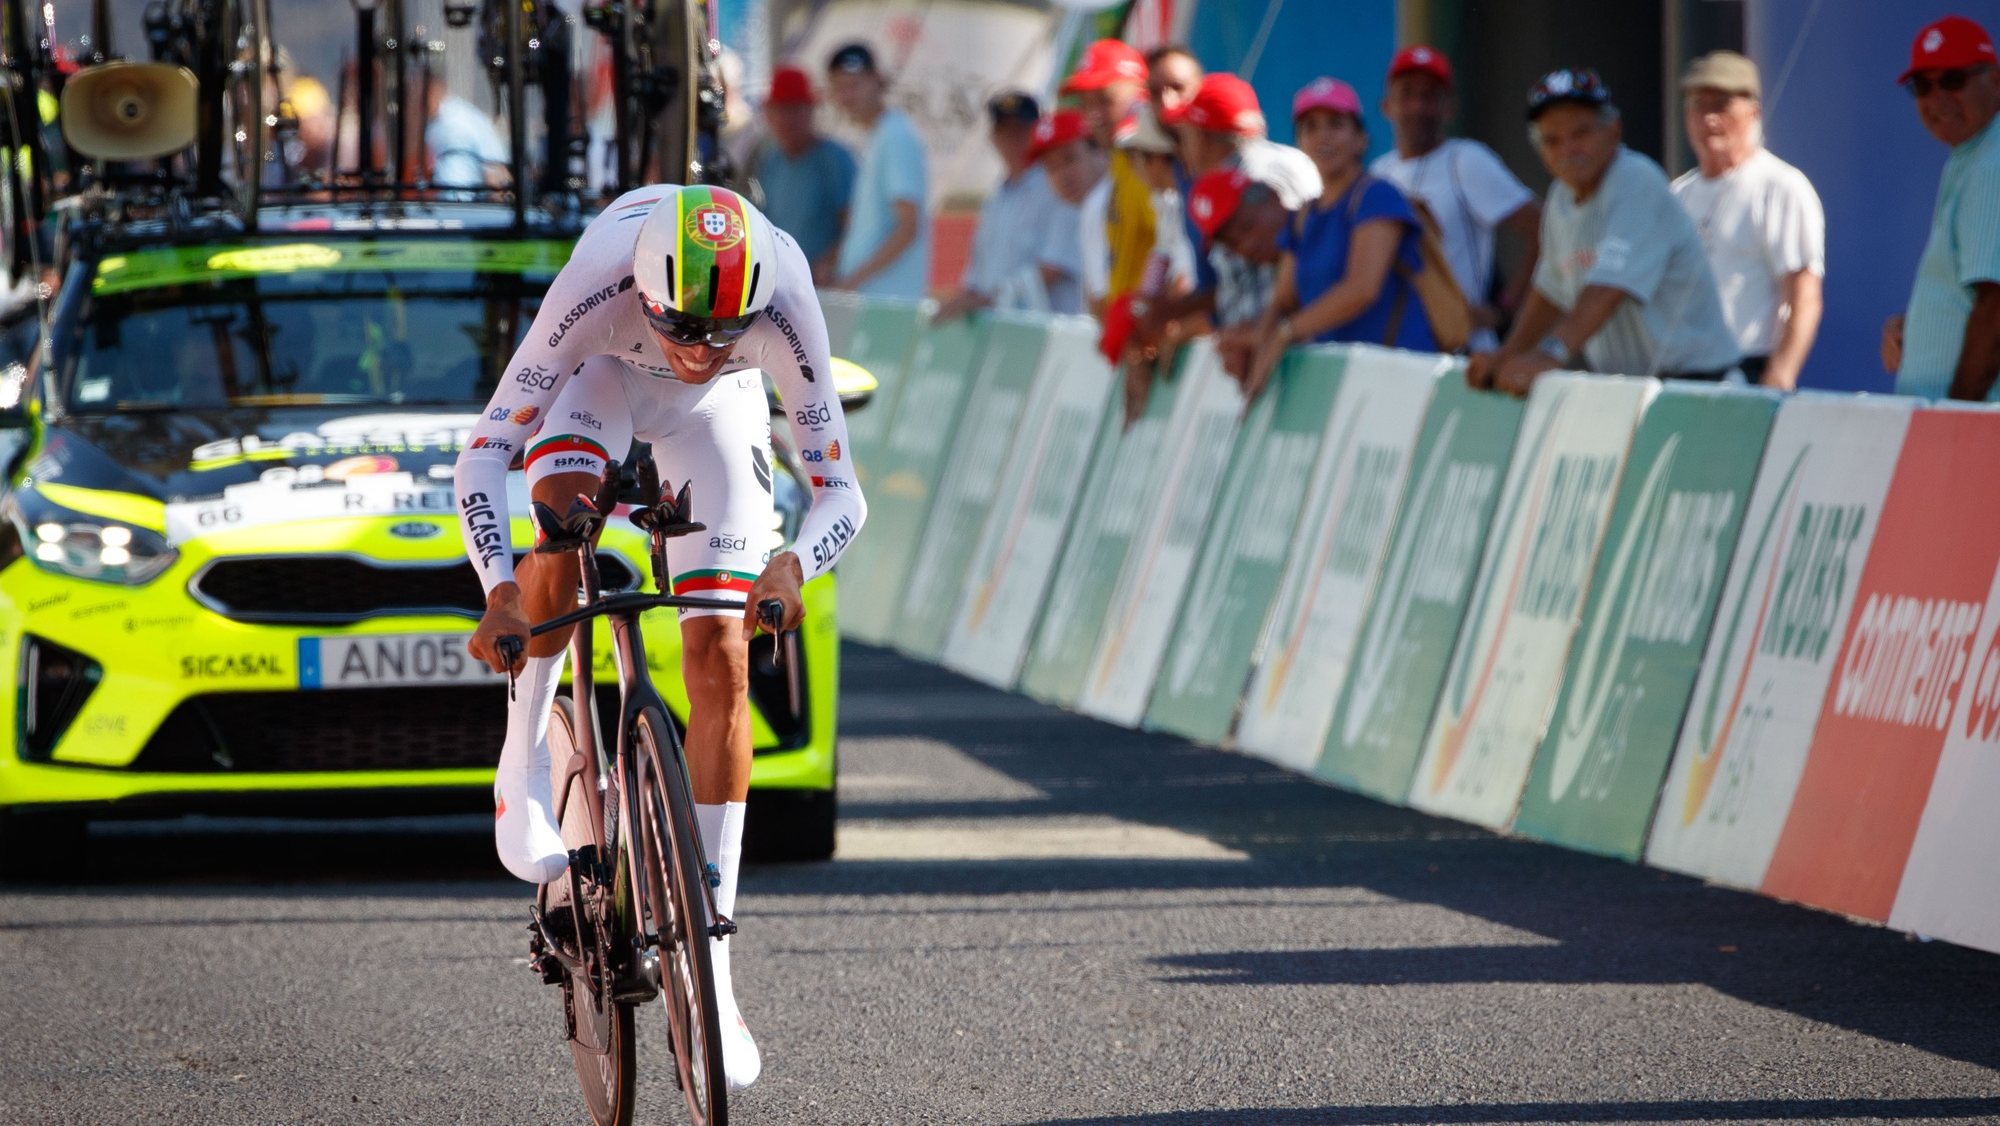 O ciclista português Rafael Reis, com o dorsal nº 66, da equipa (GCT) Glassdrive/Q8/Anicolor (POR), é o primeiro camisola amarela da 83ª Volta a Portugal em Bicicleta, após o prólogo com a distância de 5,4 km, em Lisboa, 4 de agosto de 2022. PEDRO SARMENTO COSTA/LUSA